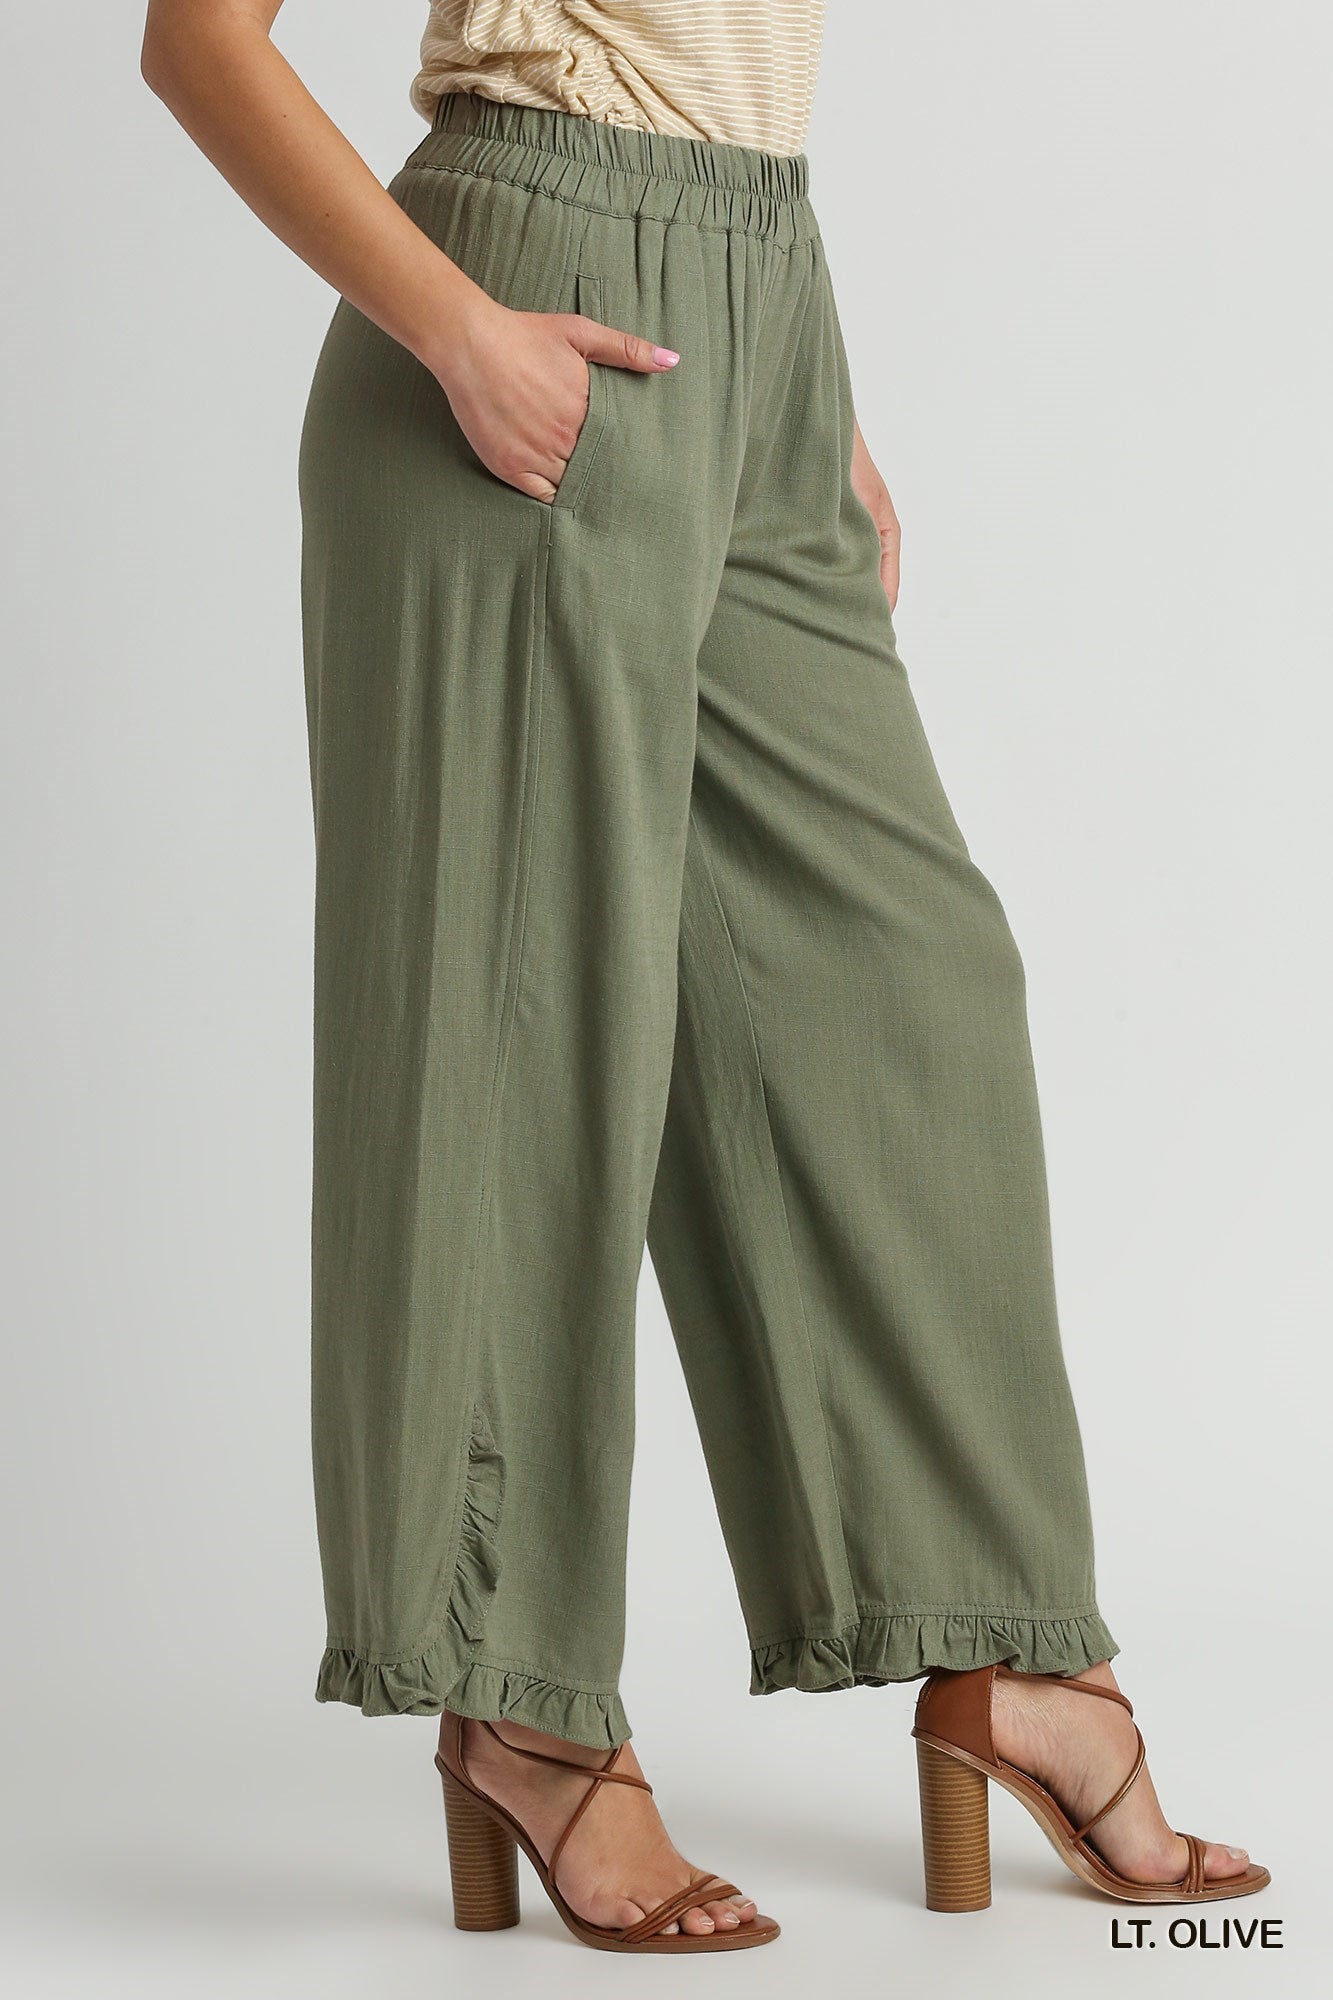 Linen Blend Elastic Waist Ruffle Hem Pants with Pockets